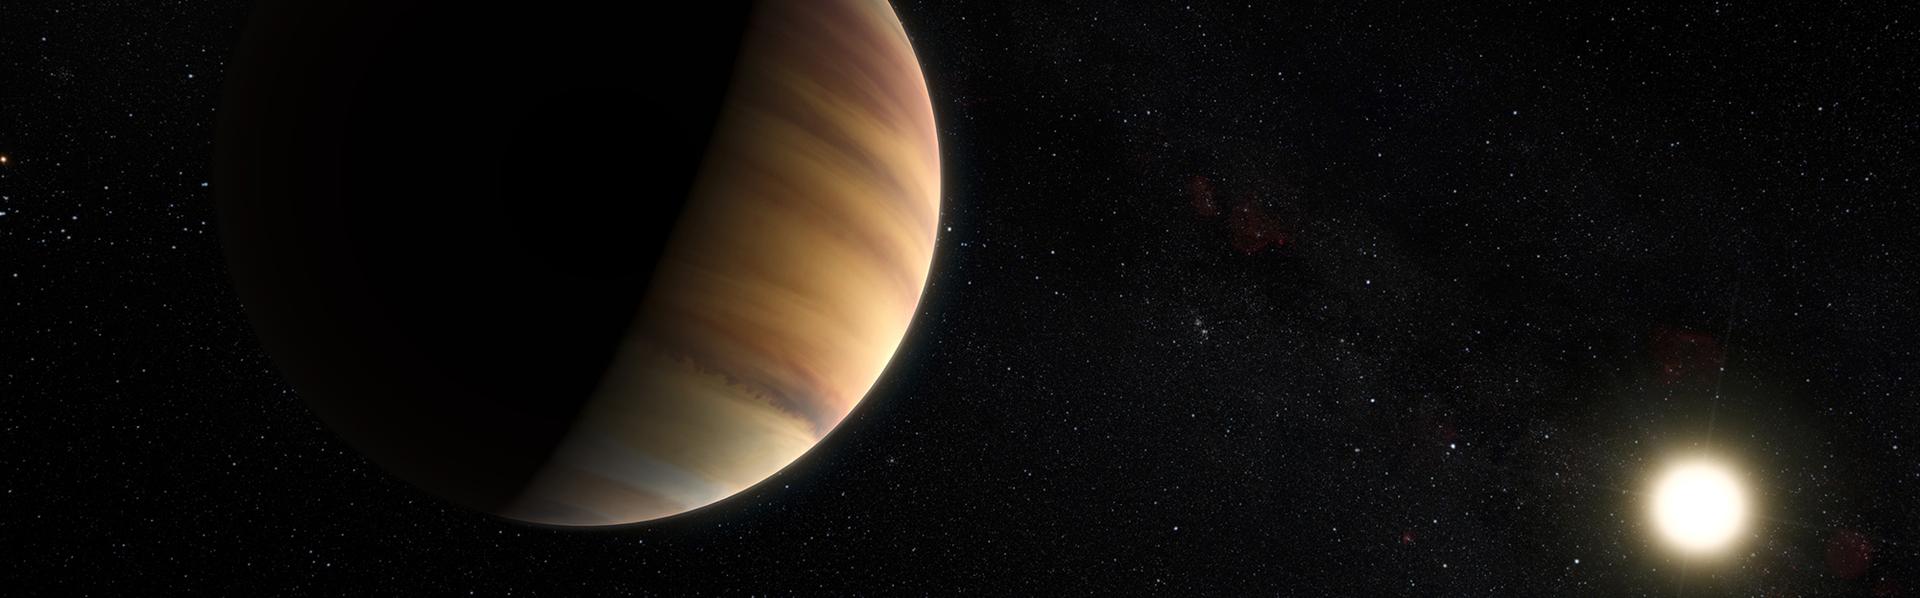 Vue d'artiste de l'exoplanète 51 Pegasi b, la première planète hors système solaire a avoir été découverte.
M. Kornmesser/Nick Risinger/EUROPEAN SOUTHERN OBSERVATORY
AFP [M. Kornmesser/Nick Risinger/EUROPEAN SOUTHERN OBSERVATORY]